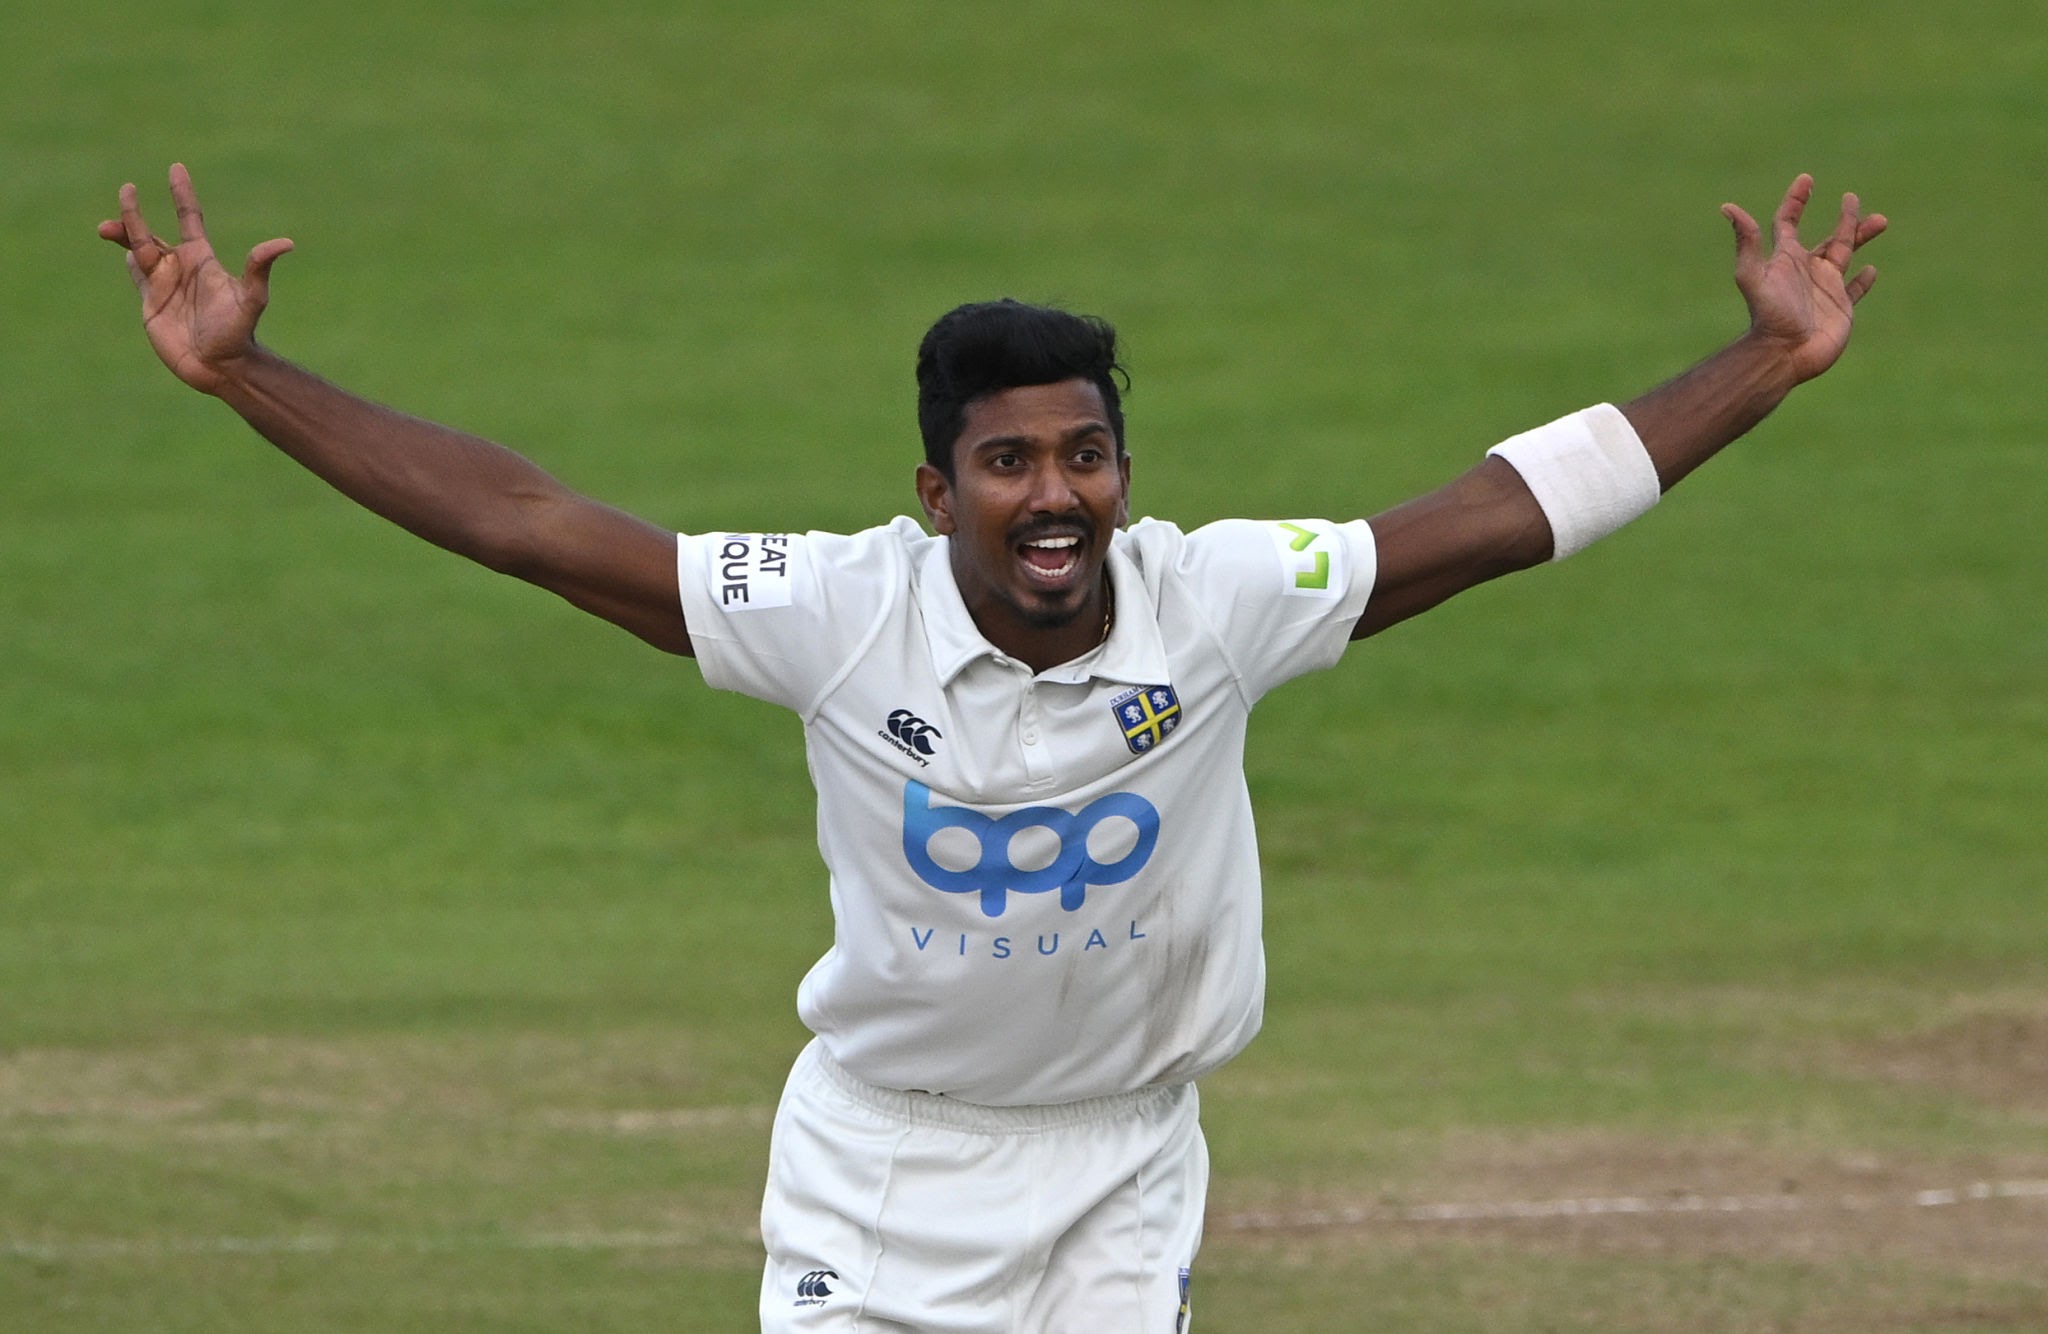 Sri Lanka’s Vishva Fernando to play for Yorkshire